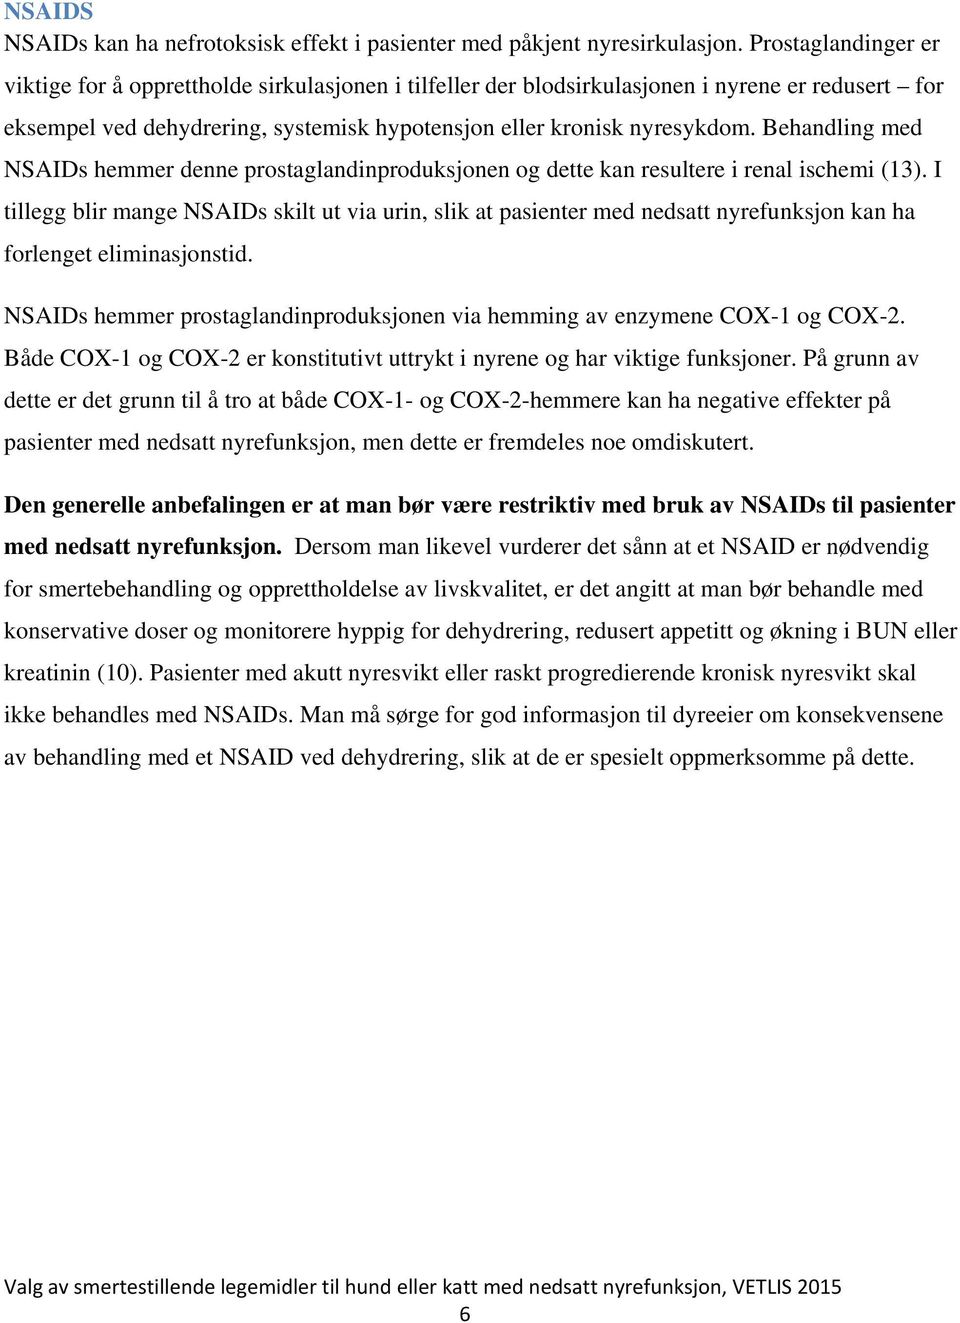 Behandling med NSAIDs hemmer denne prostaglandinproduksjonen og dette kan resultere i renal ischemi (13).